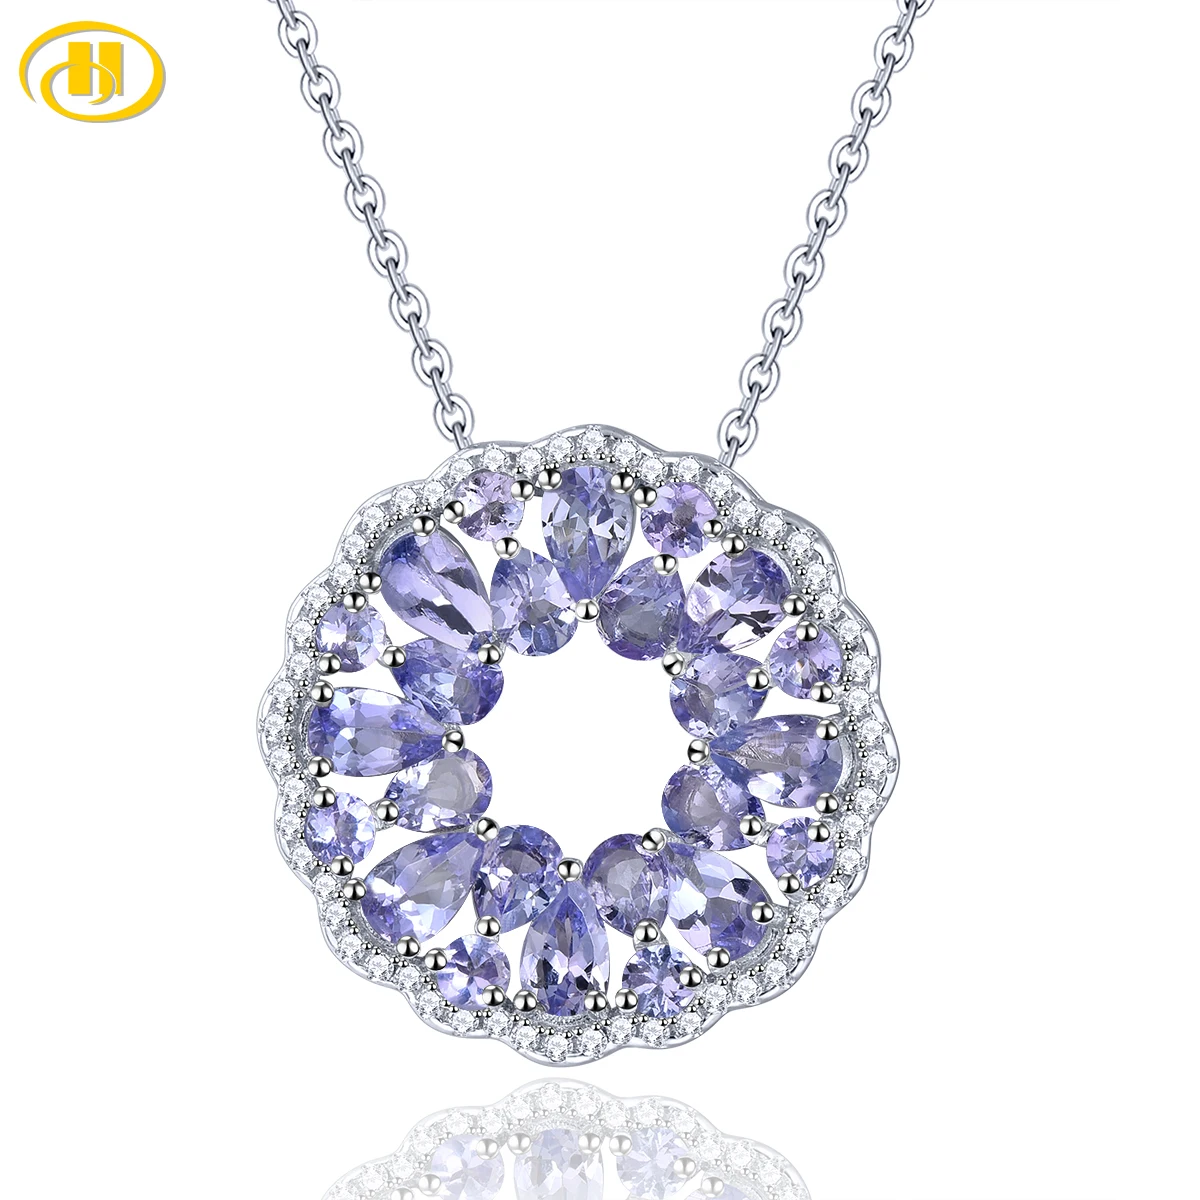 

Natural Tanzanite Silver Pendant Genuine Gemstone 3.8 Carats Unique Fine Jewelry Design Women Romantic Elegant Style S925 Gifts